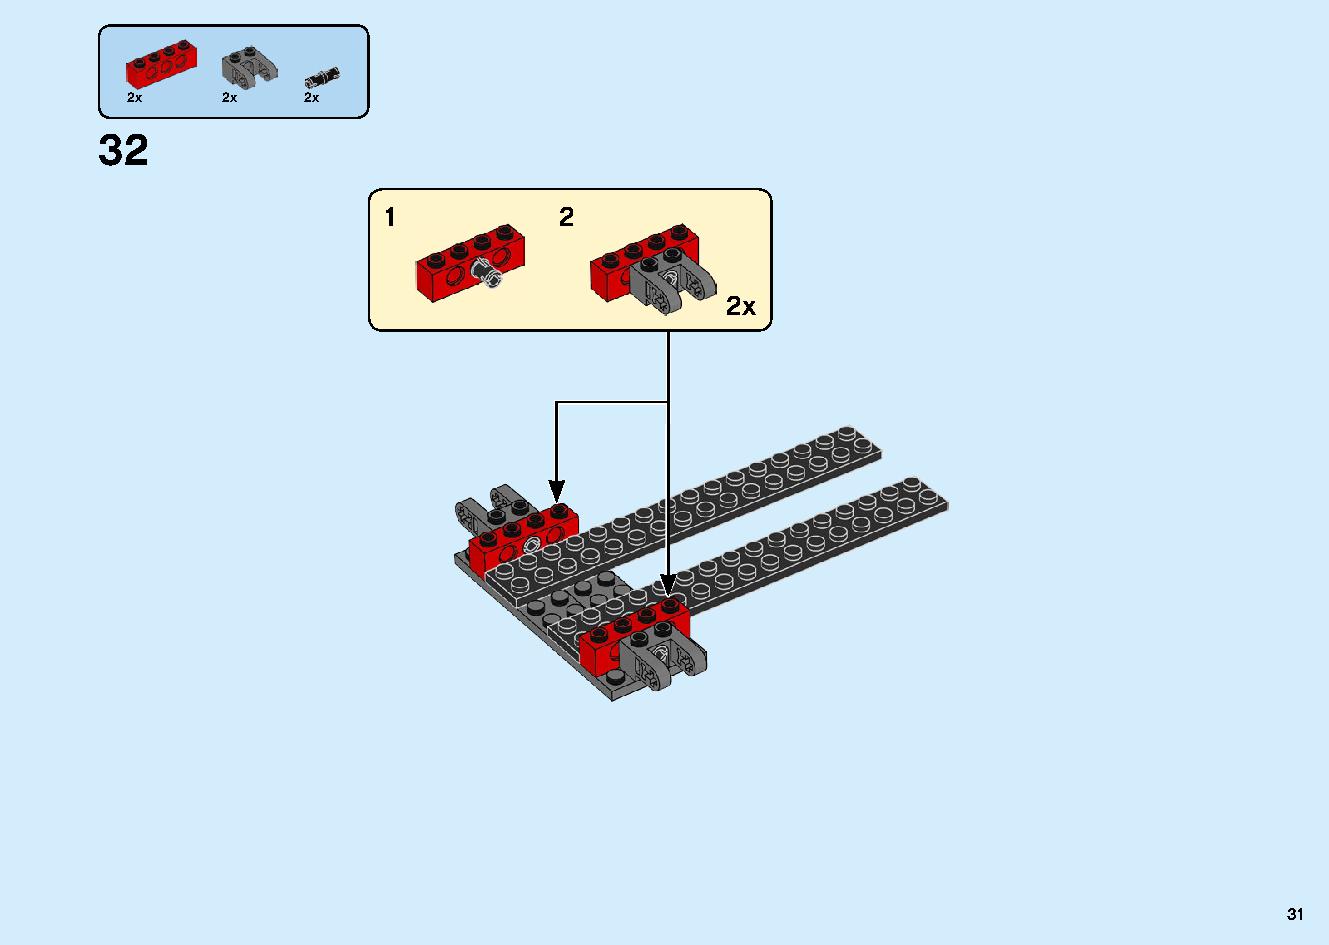 陸上戦艦バウンティ号 70677 レゴの商品情報 レゴの説明書・組立方法 31 page